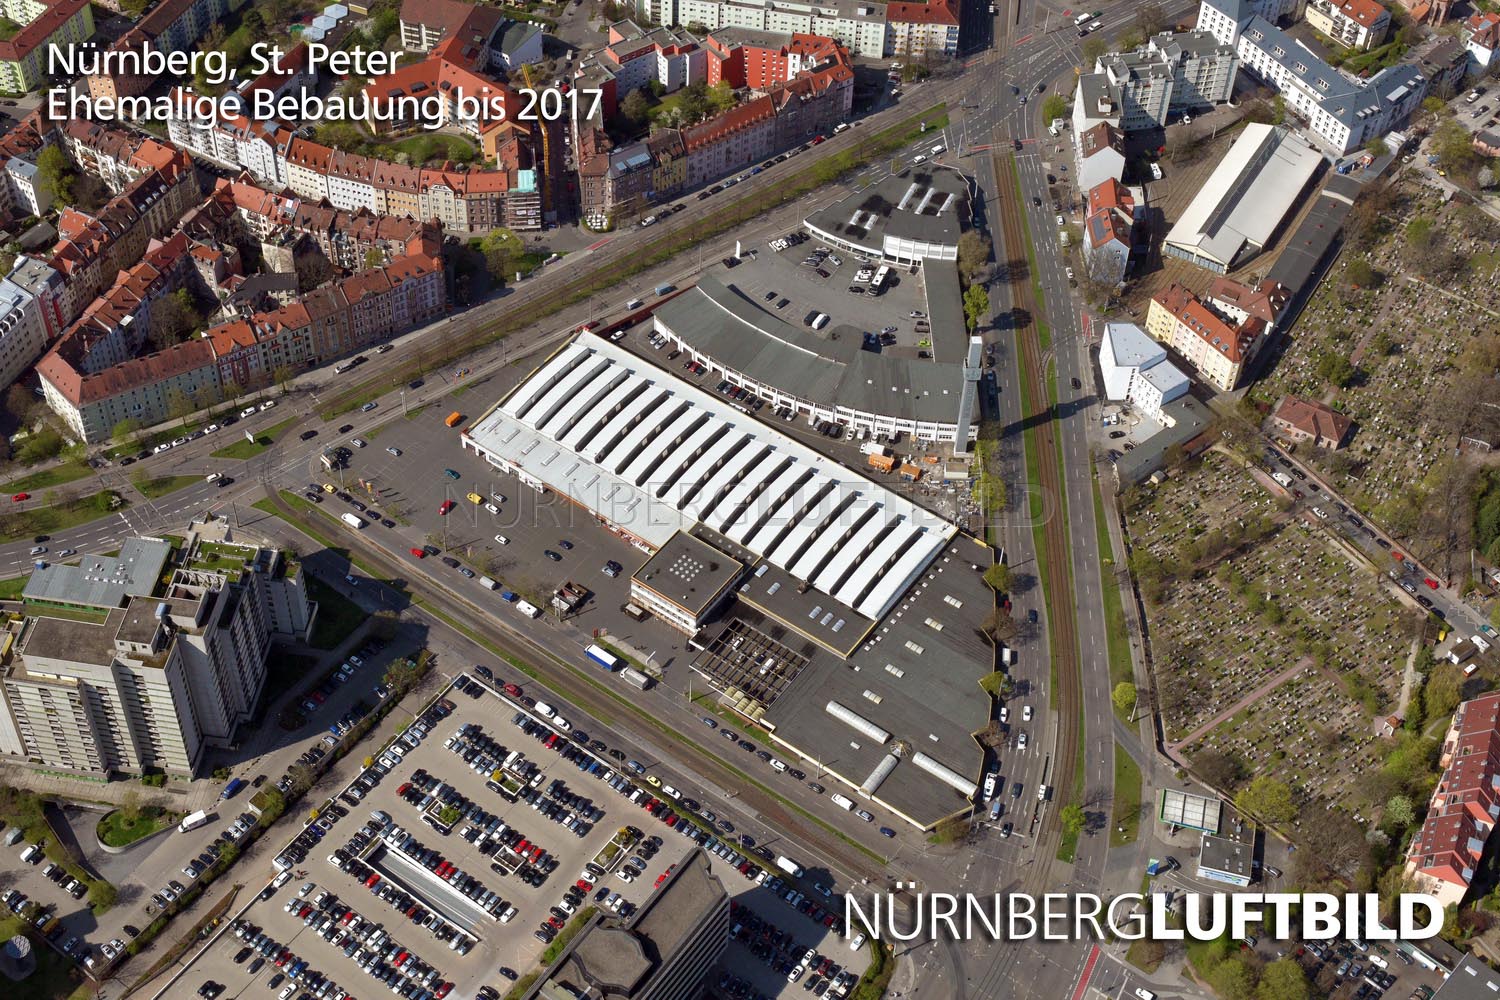 Nürnberg, St. Peter, Ehemalige Bebauung bis 2017